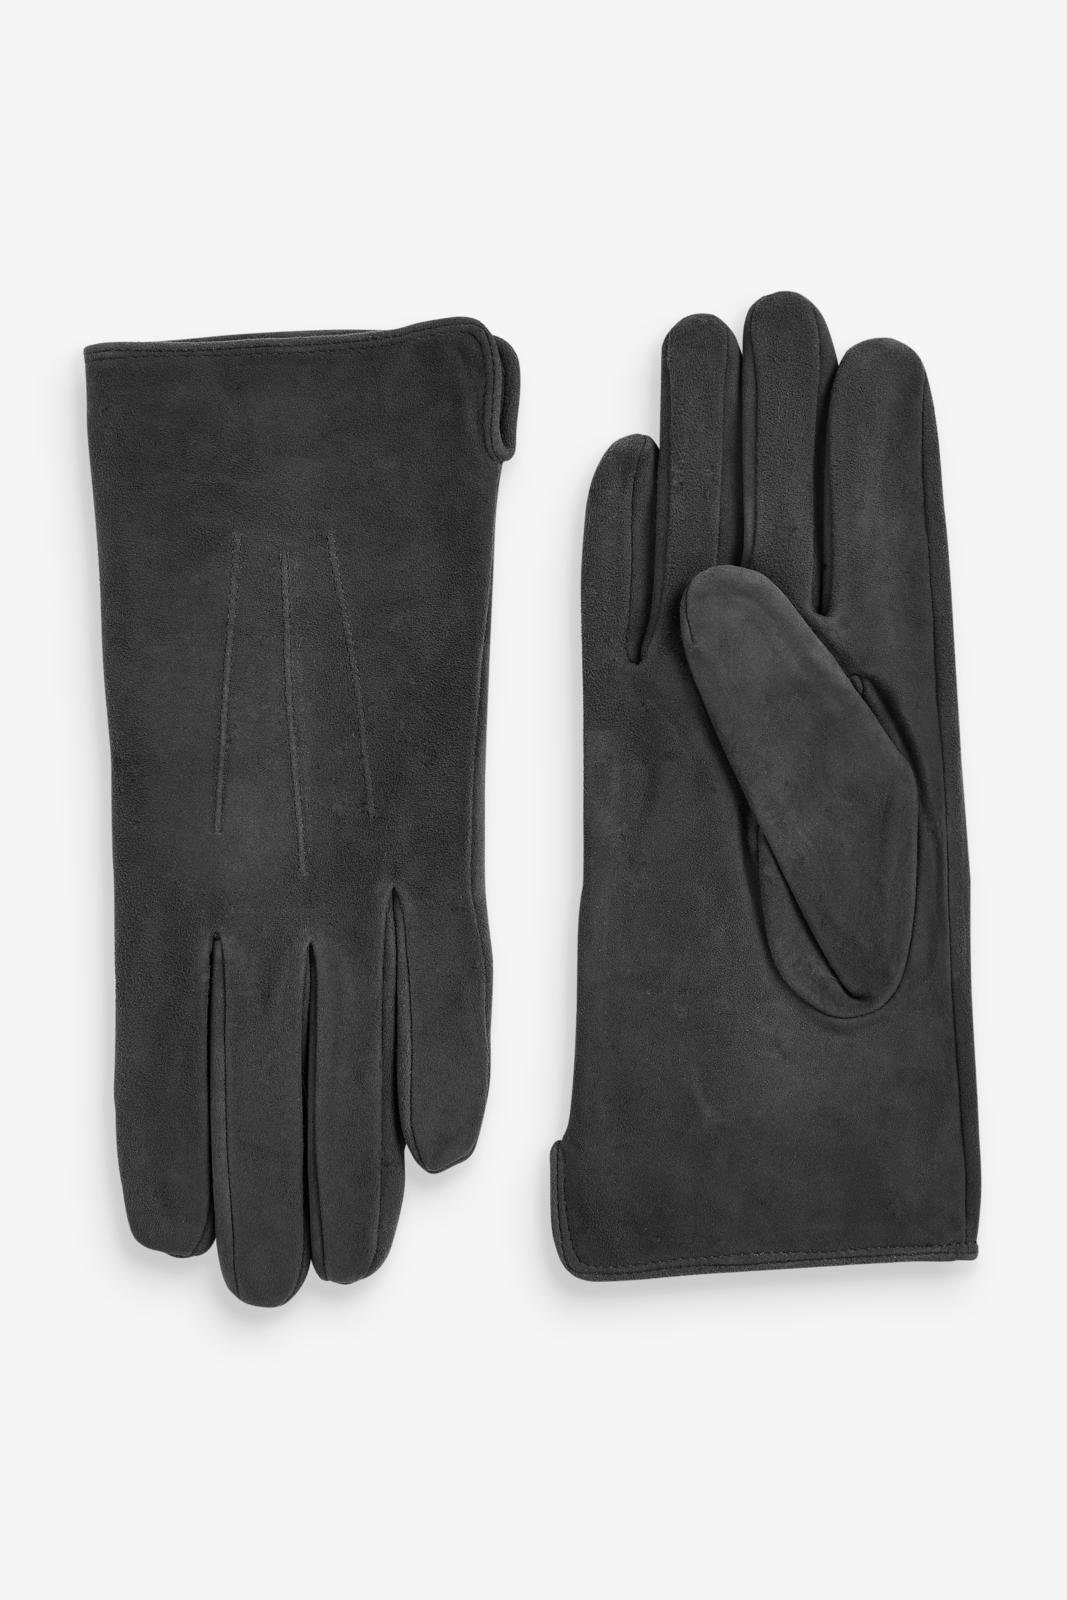 Next Strickhandschuhe Handschuhe Charcoal Grey